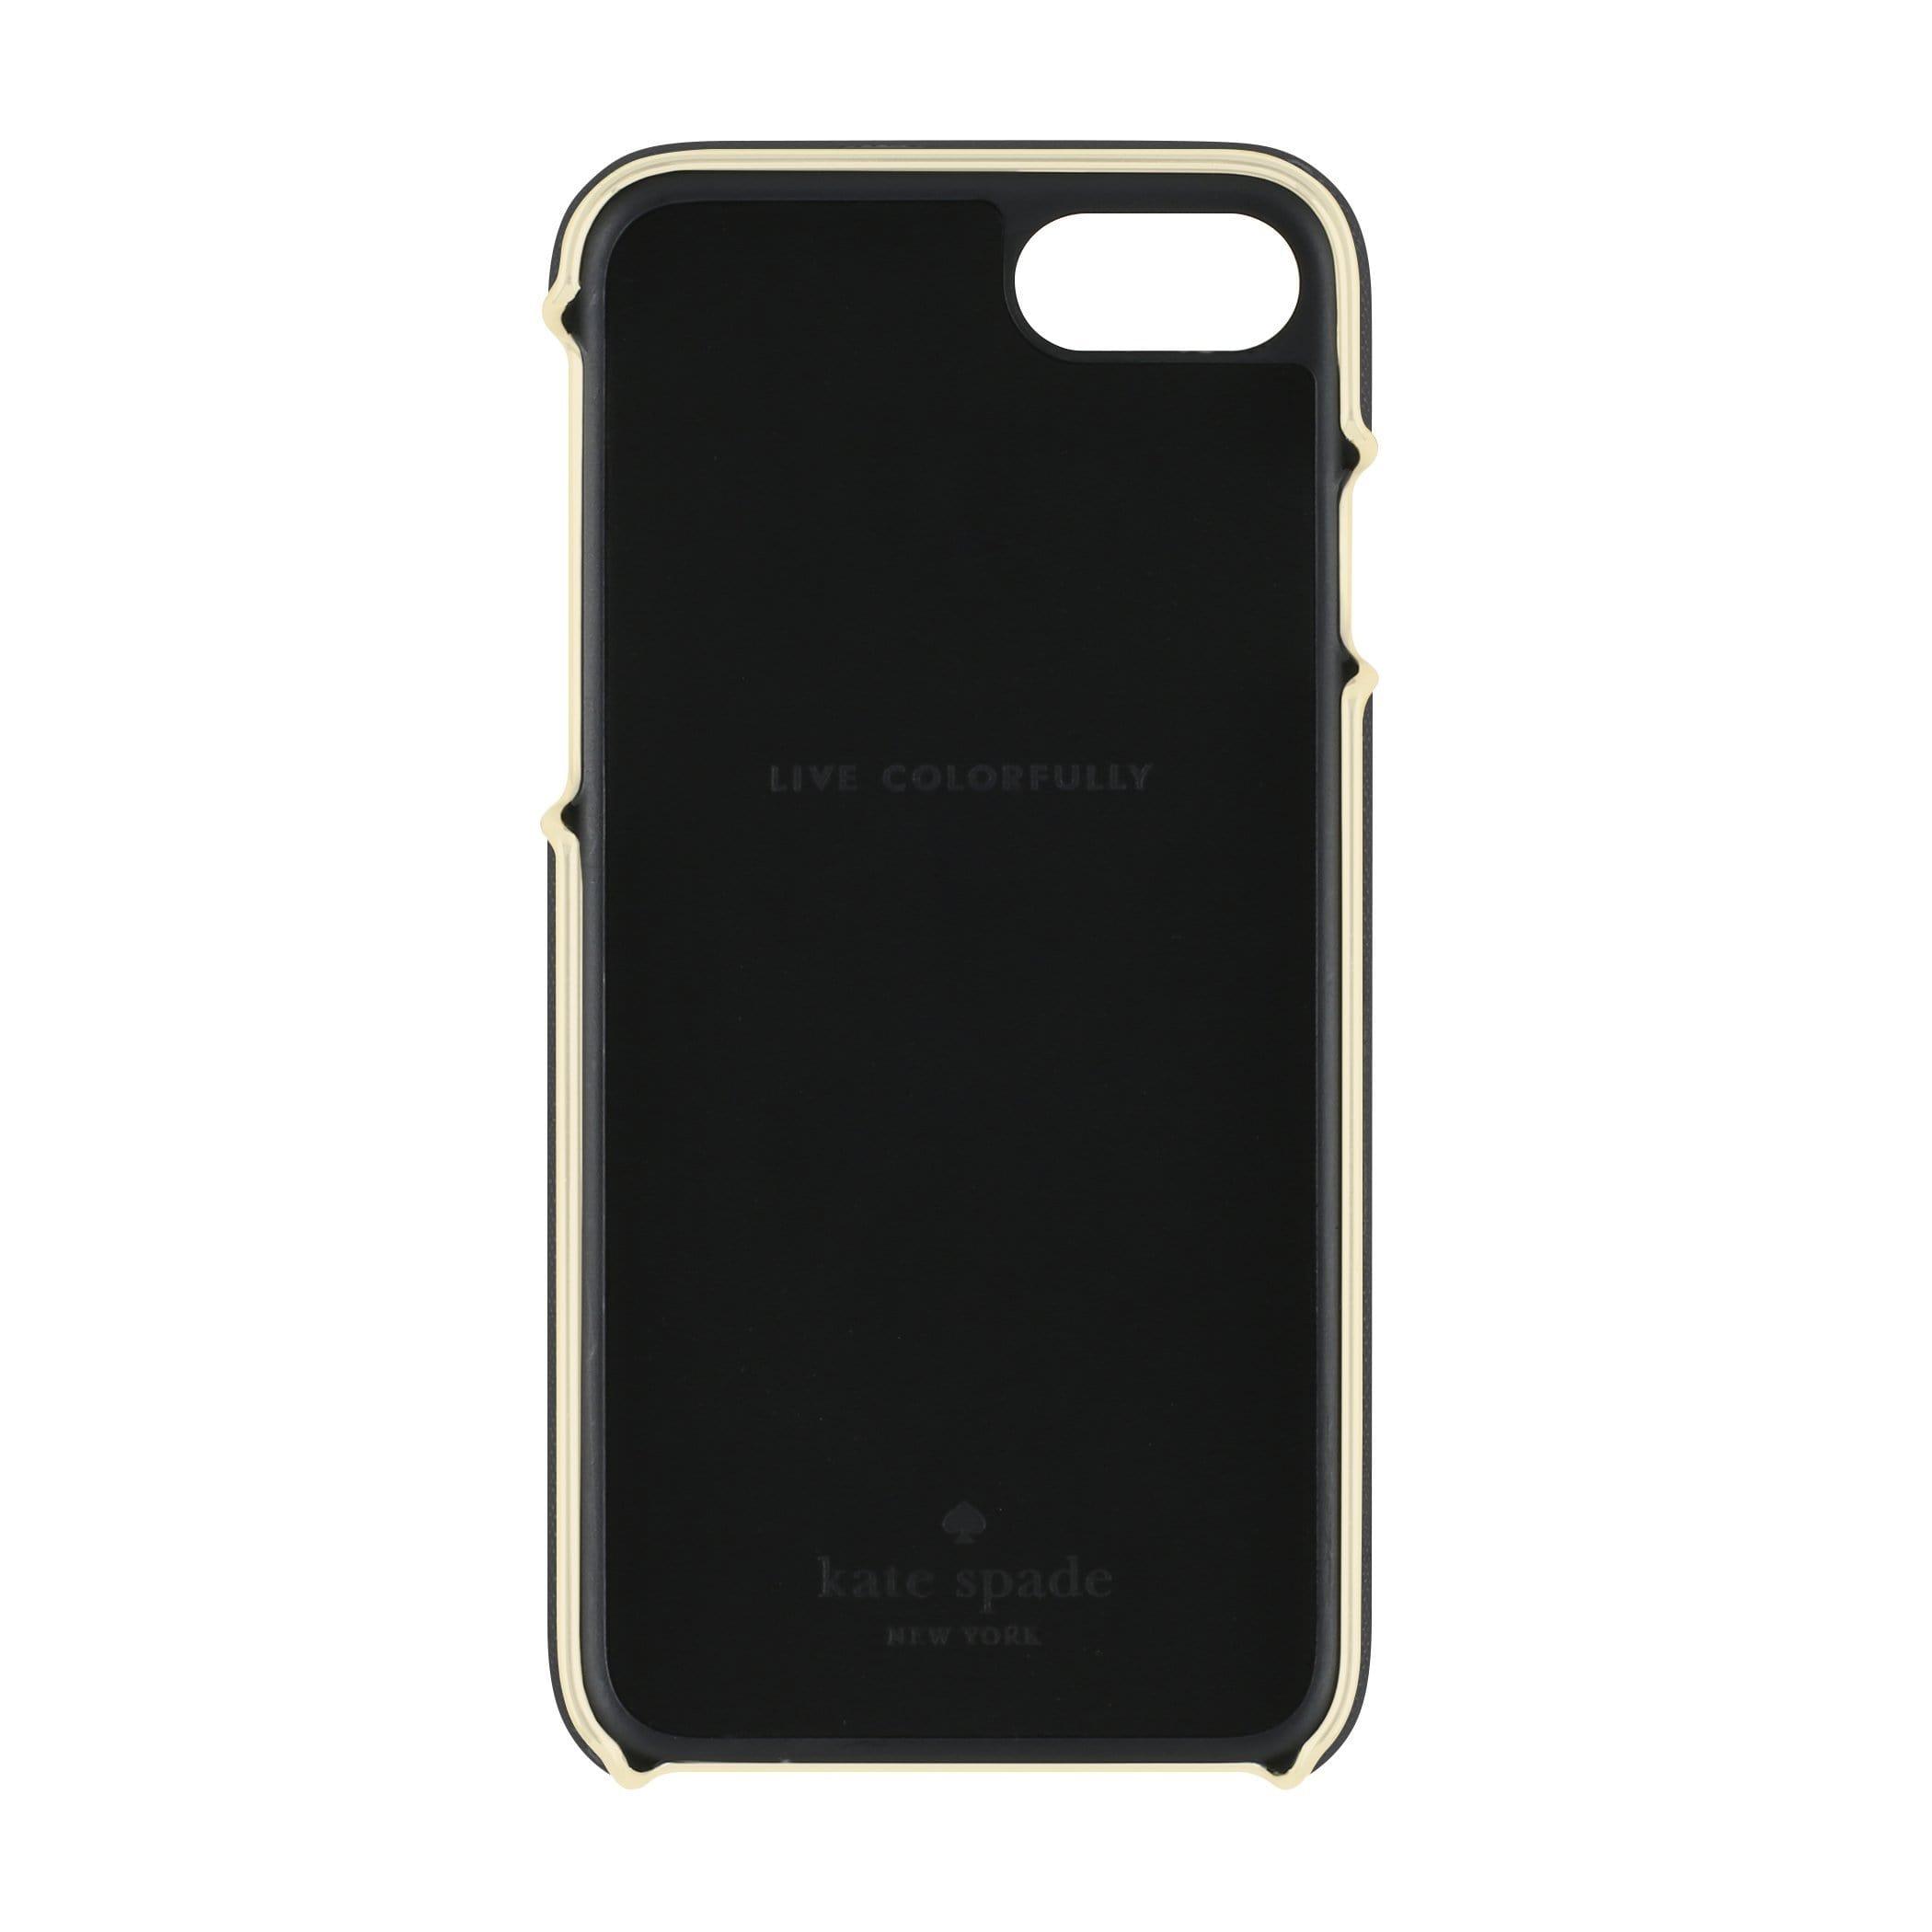 كفر آيفون 7/8  أسود  KATE SPADE NEW YORK Wrap Case for iPhone 8 / 7 Saffiano Black